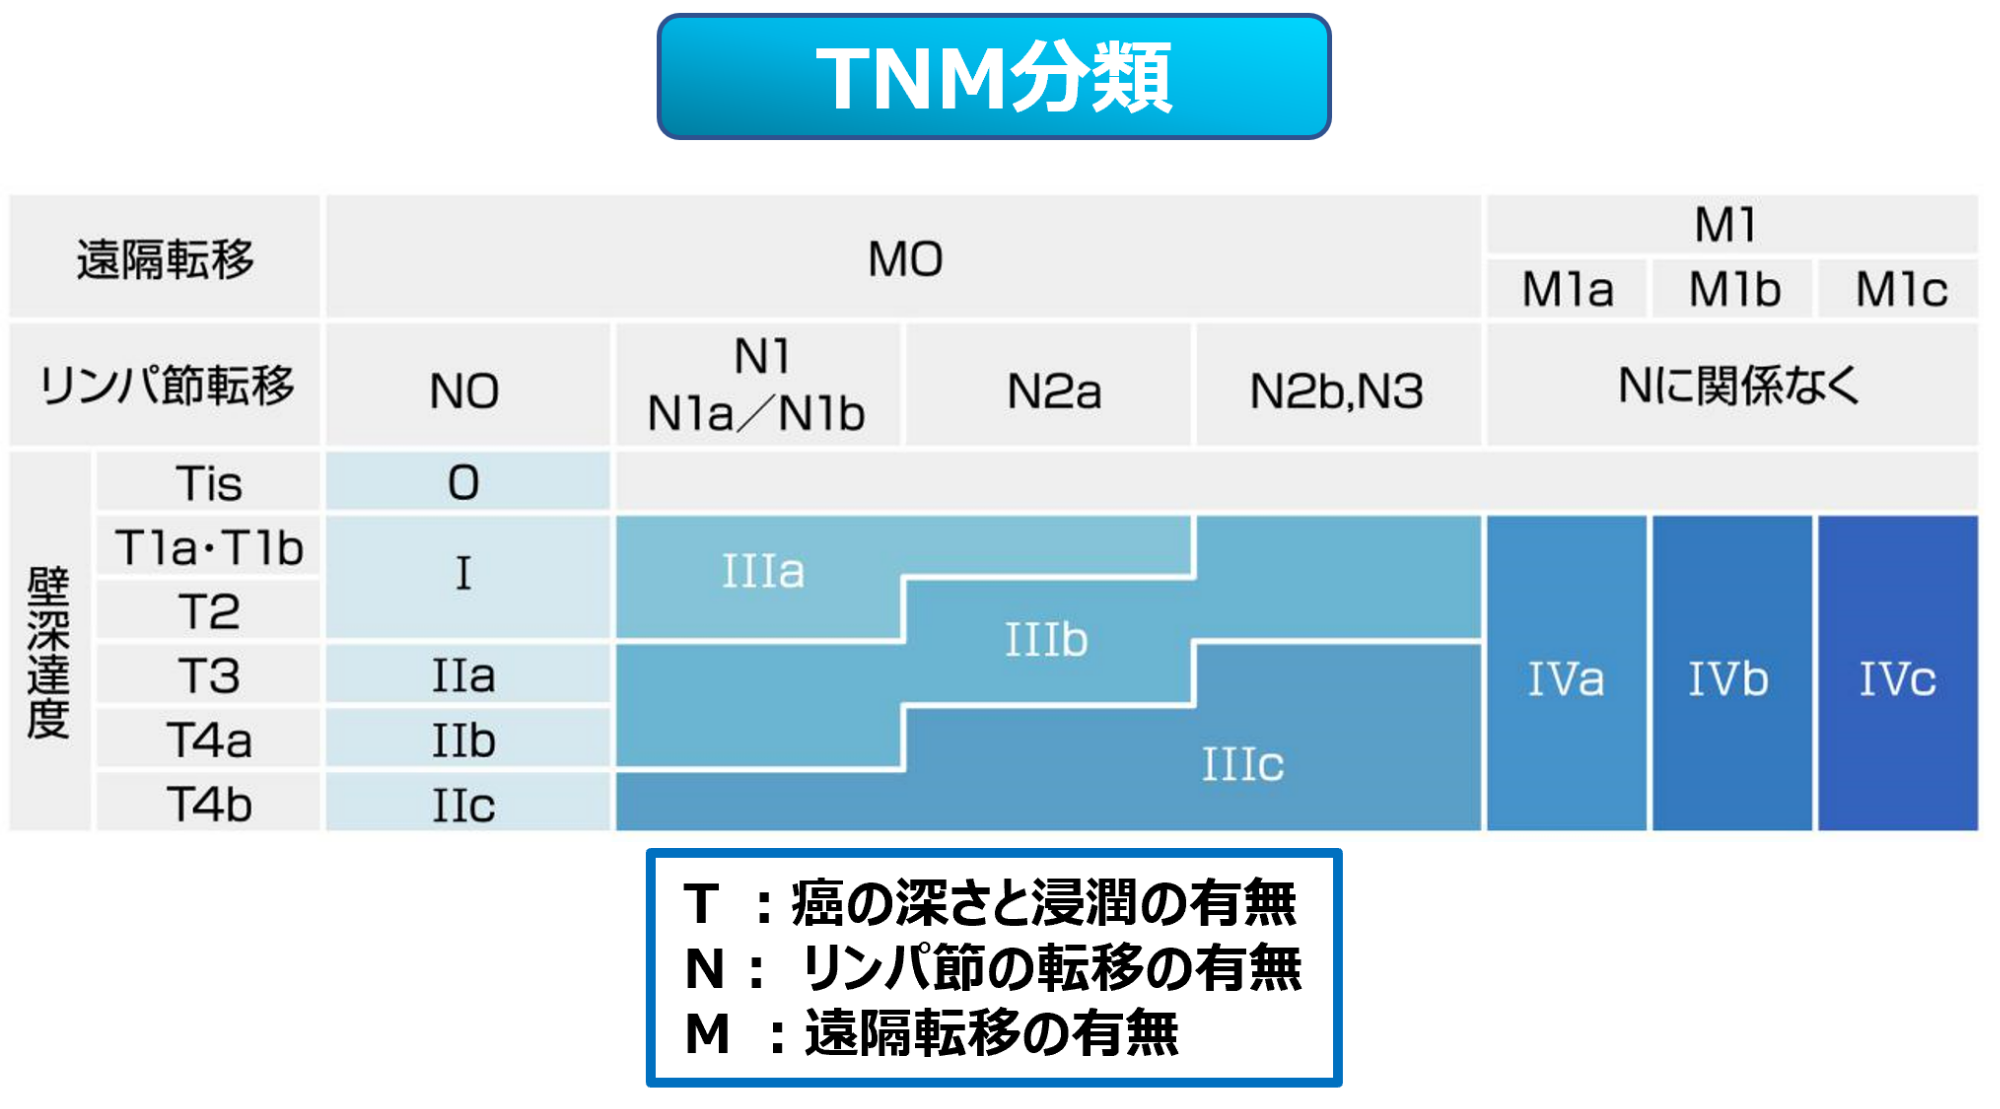 TNM分類